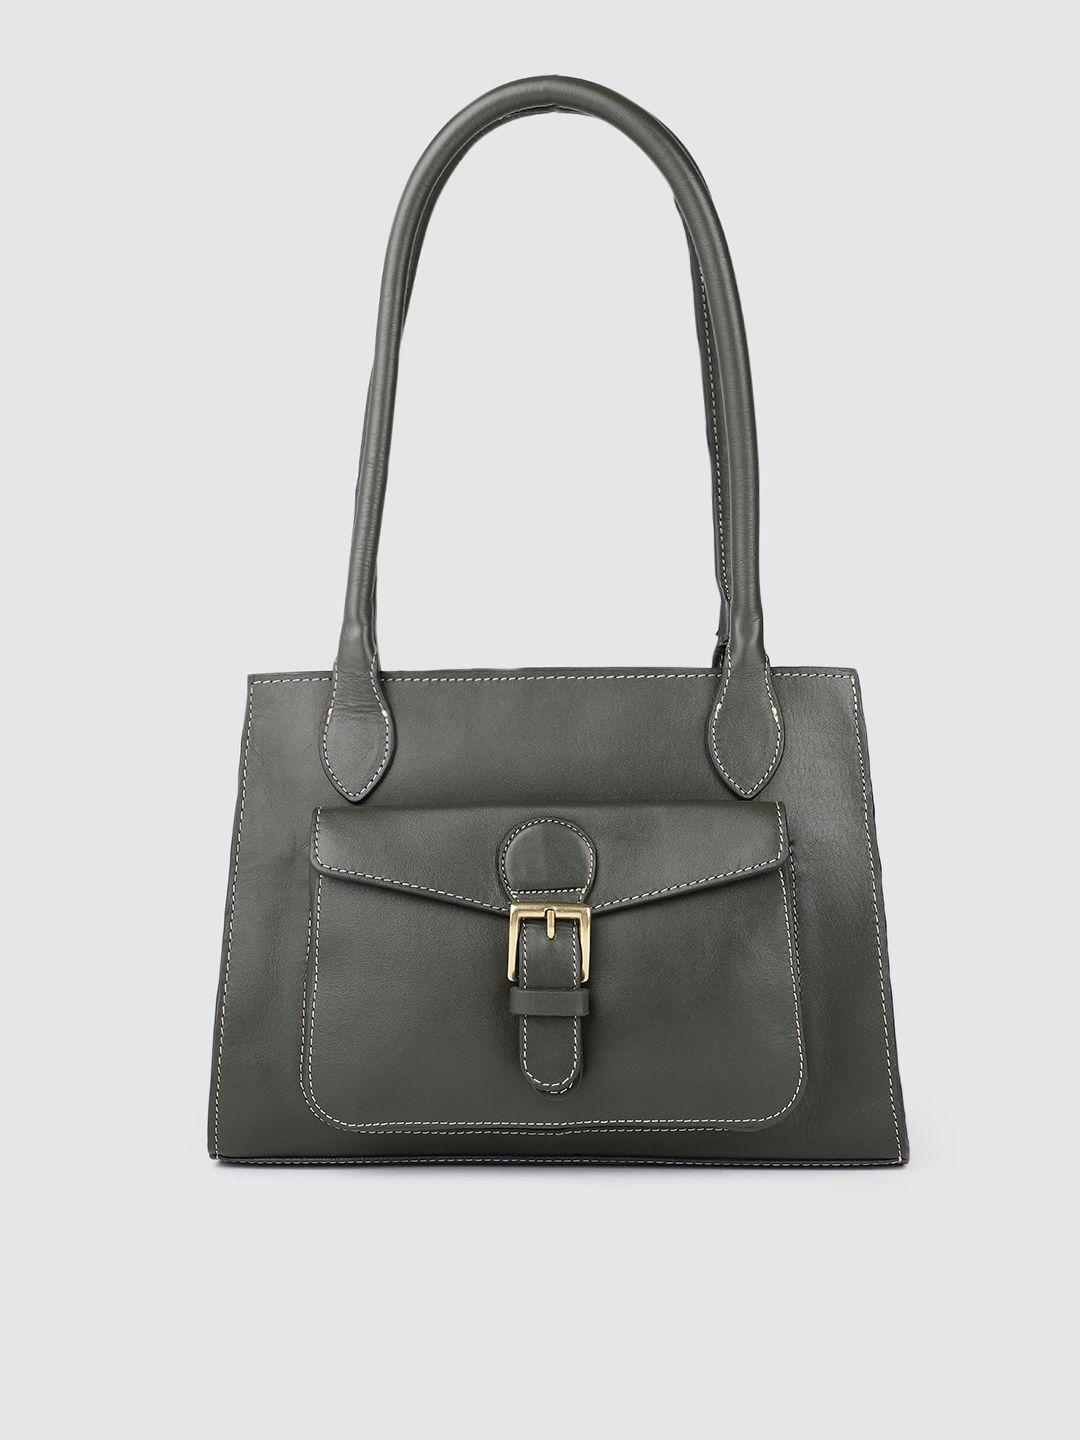 hidesign olive green leather structured shoulder bag